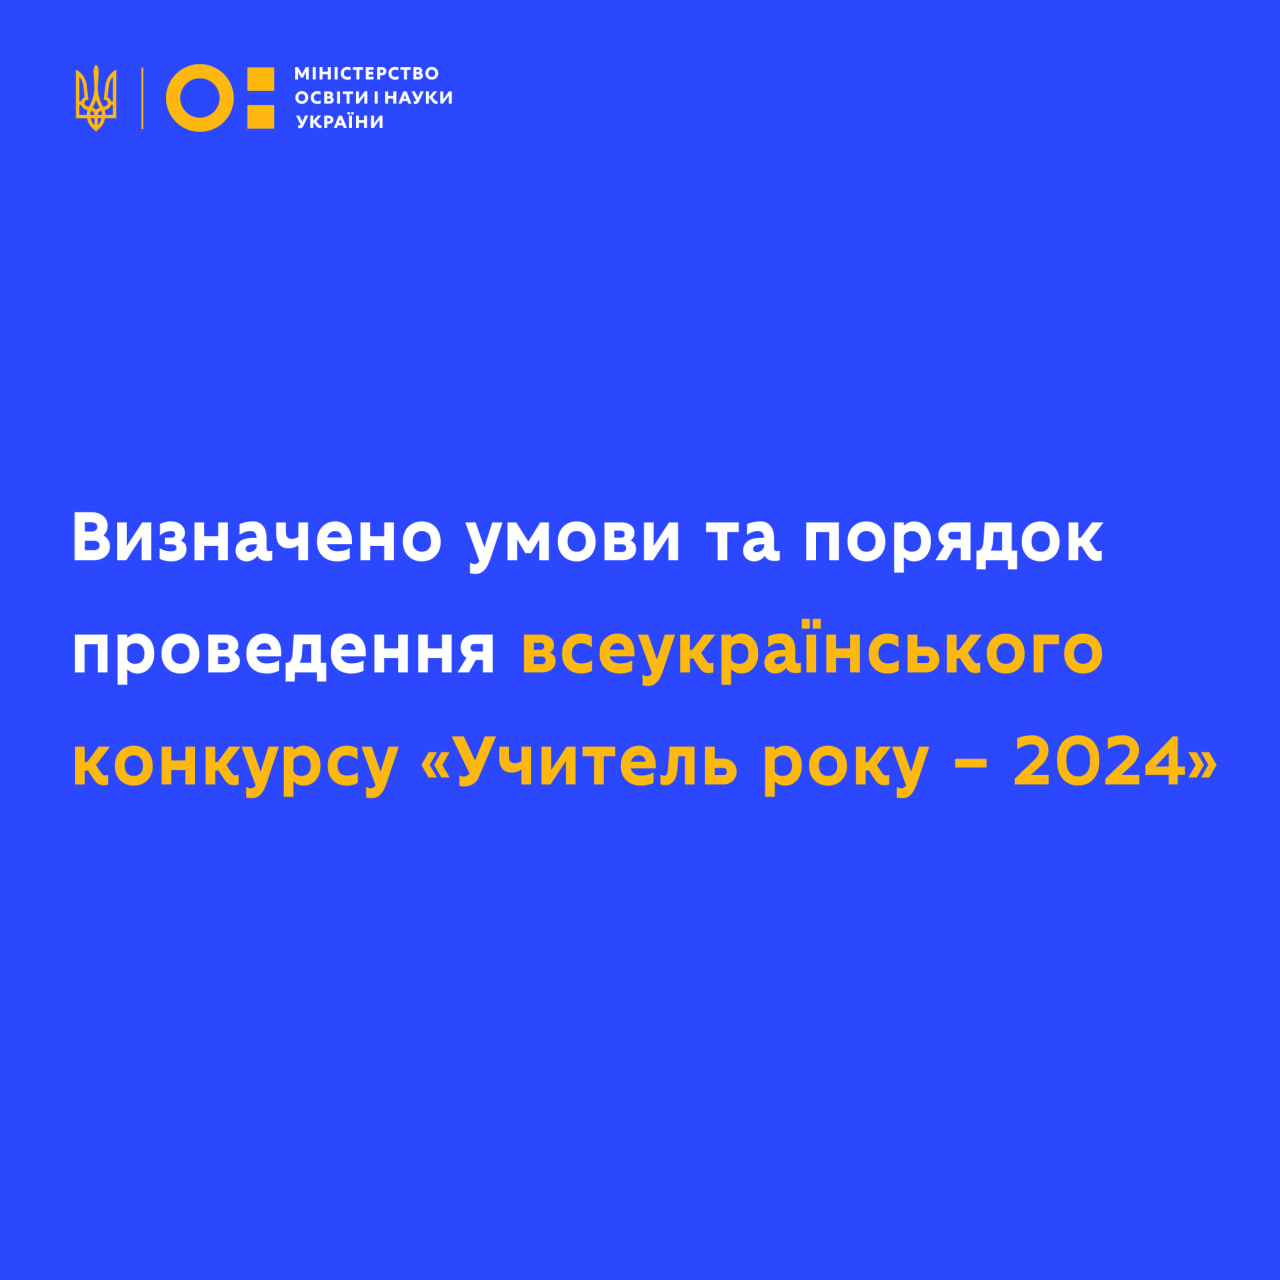 Кабмін визначив порядок проведення конкурсу «Учитель року-2024»